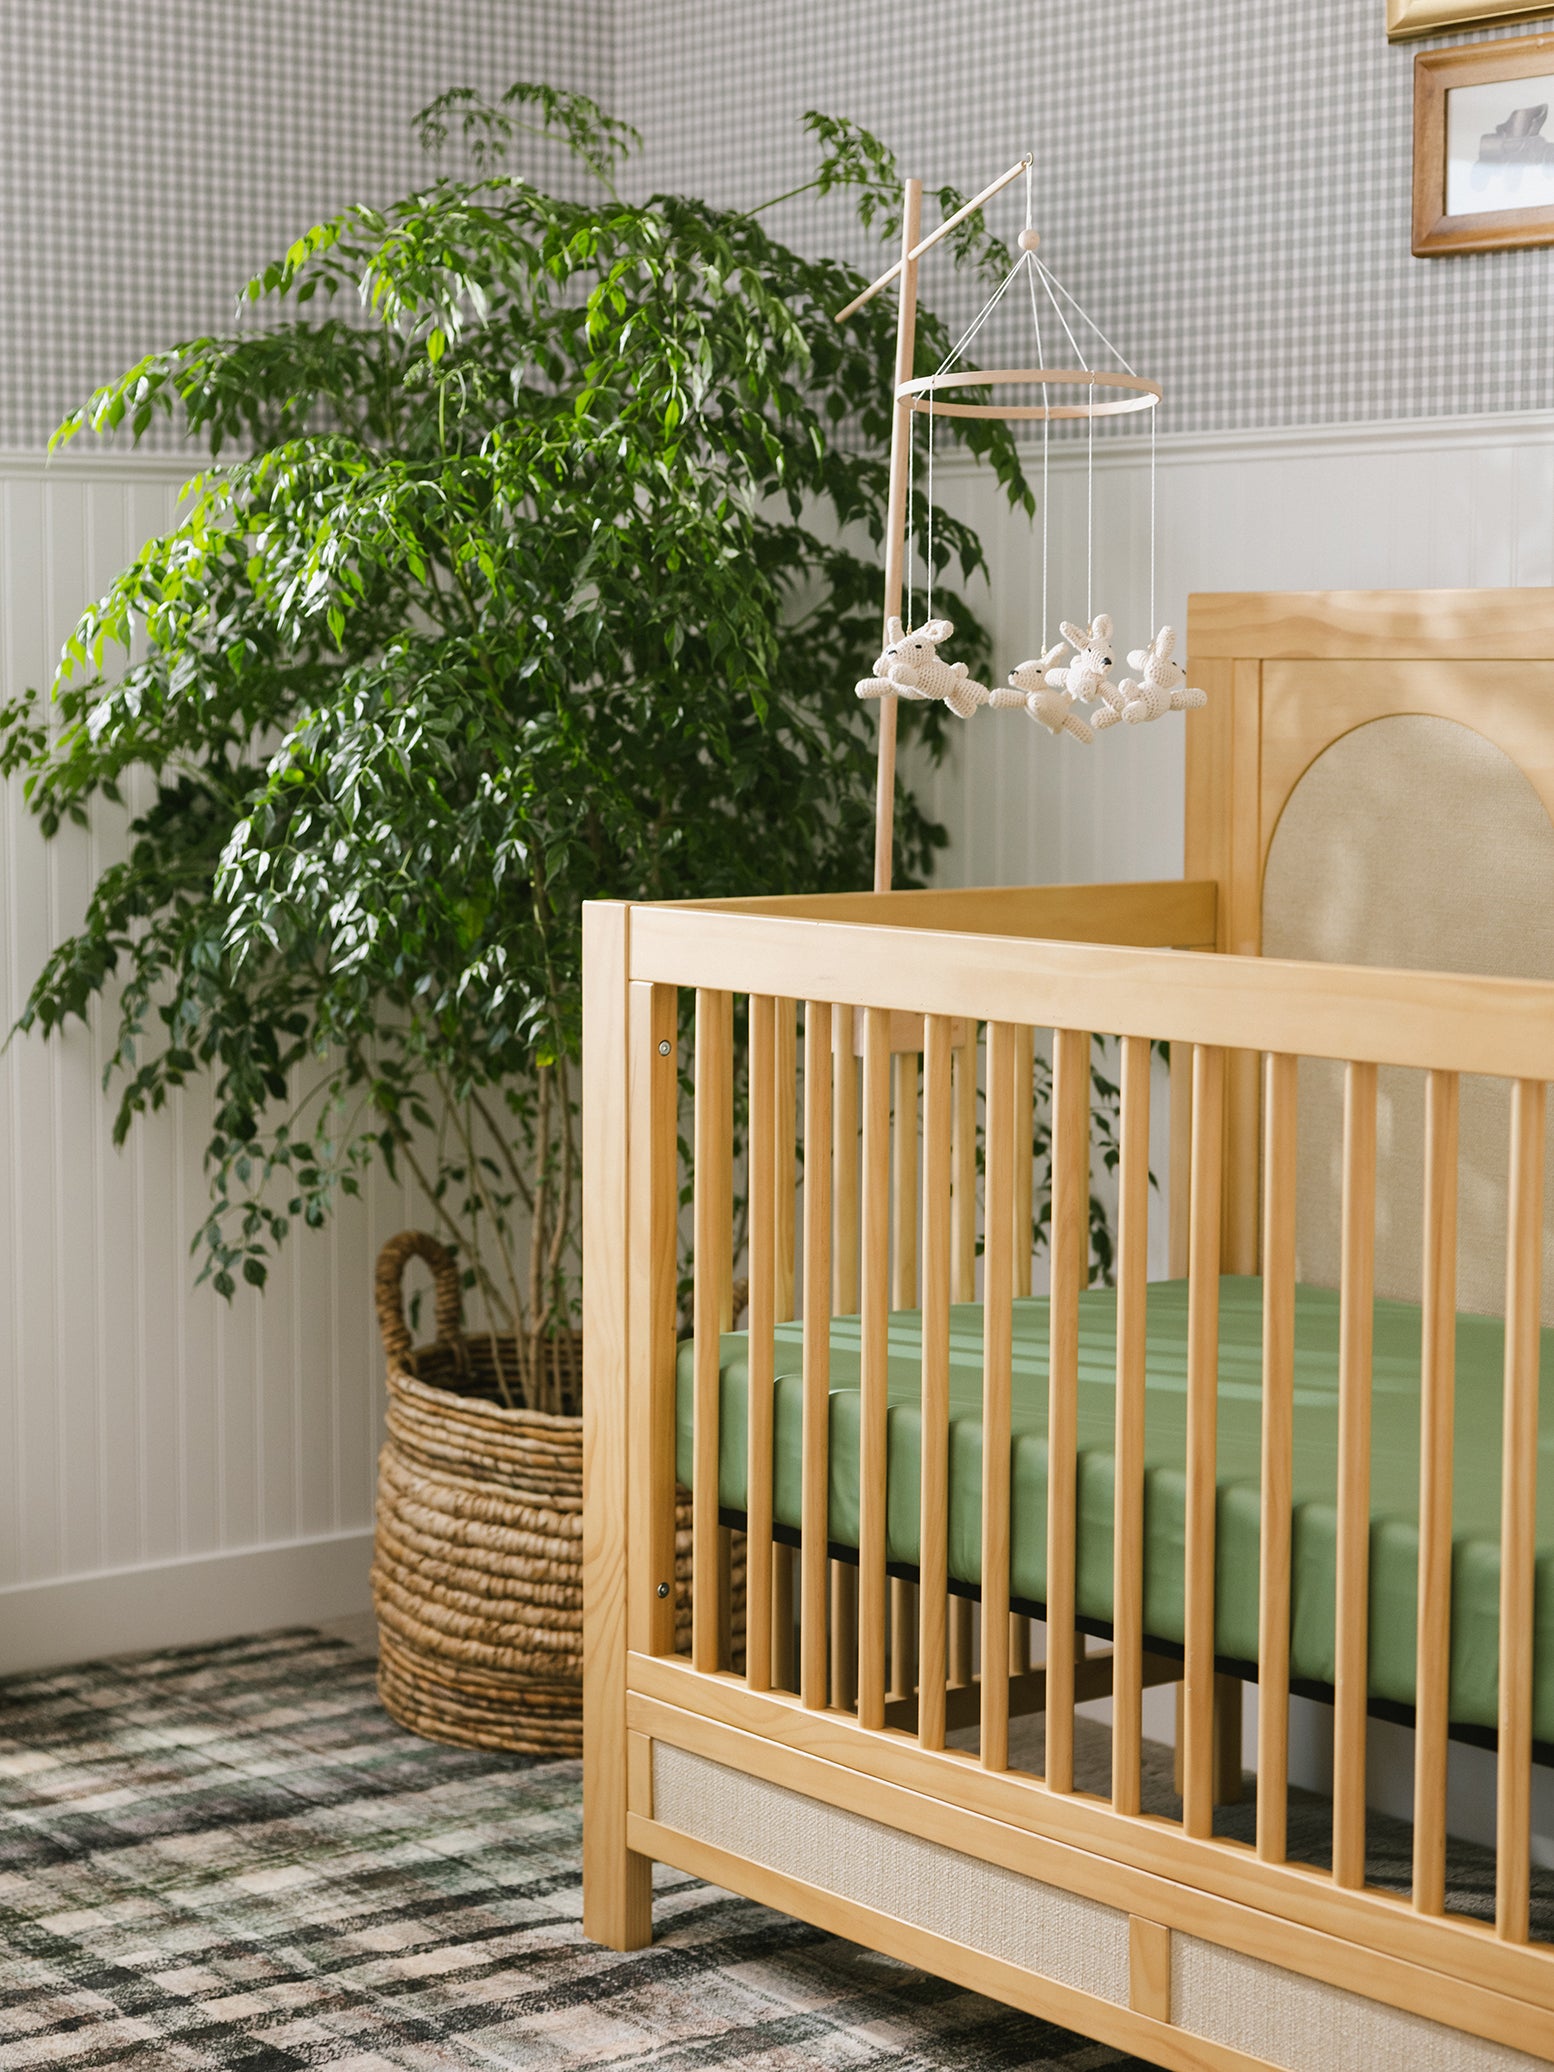 Fern Bamboo Crib Sheet in baby crib. 